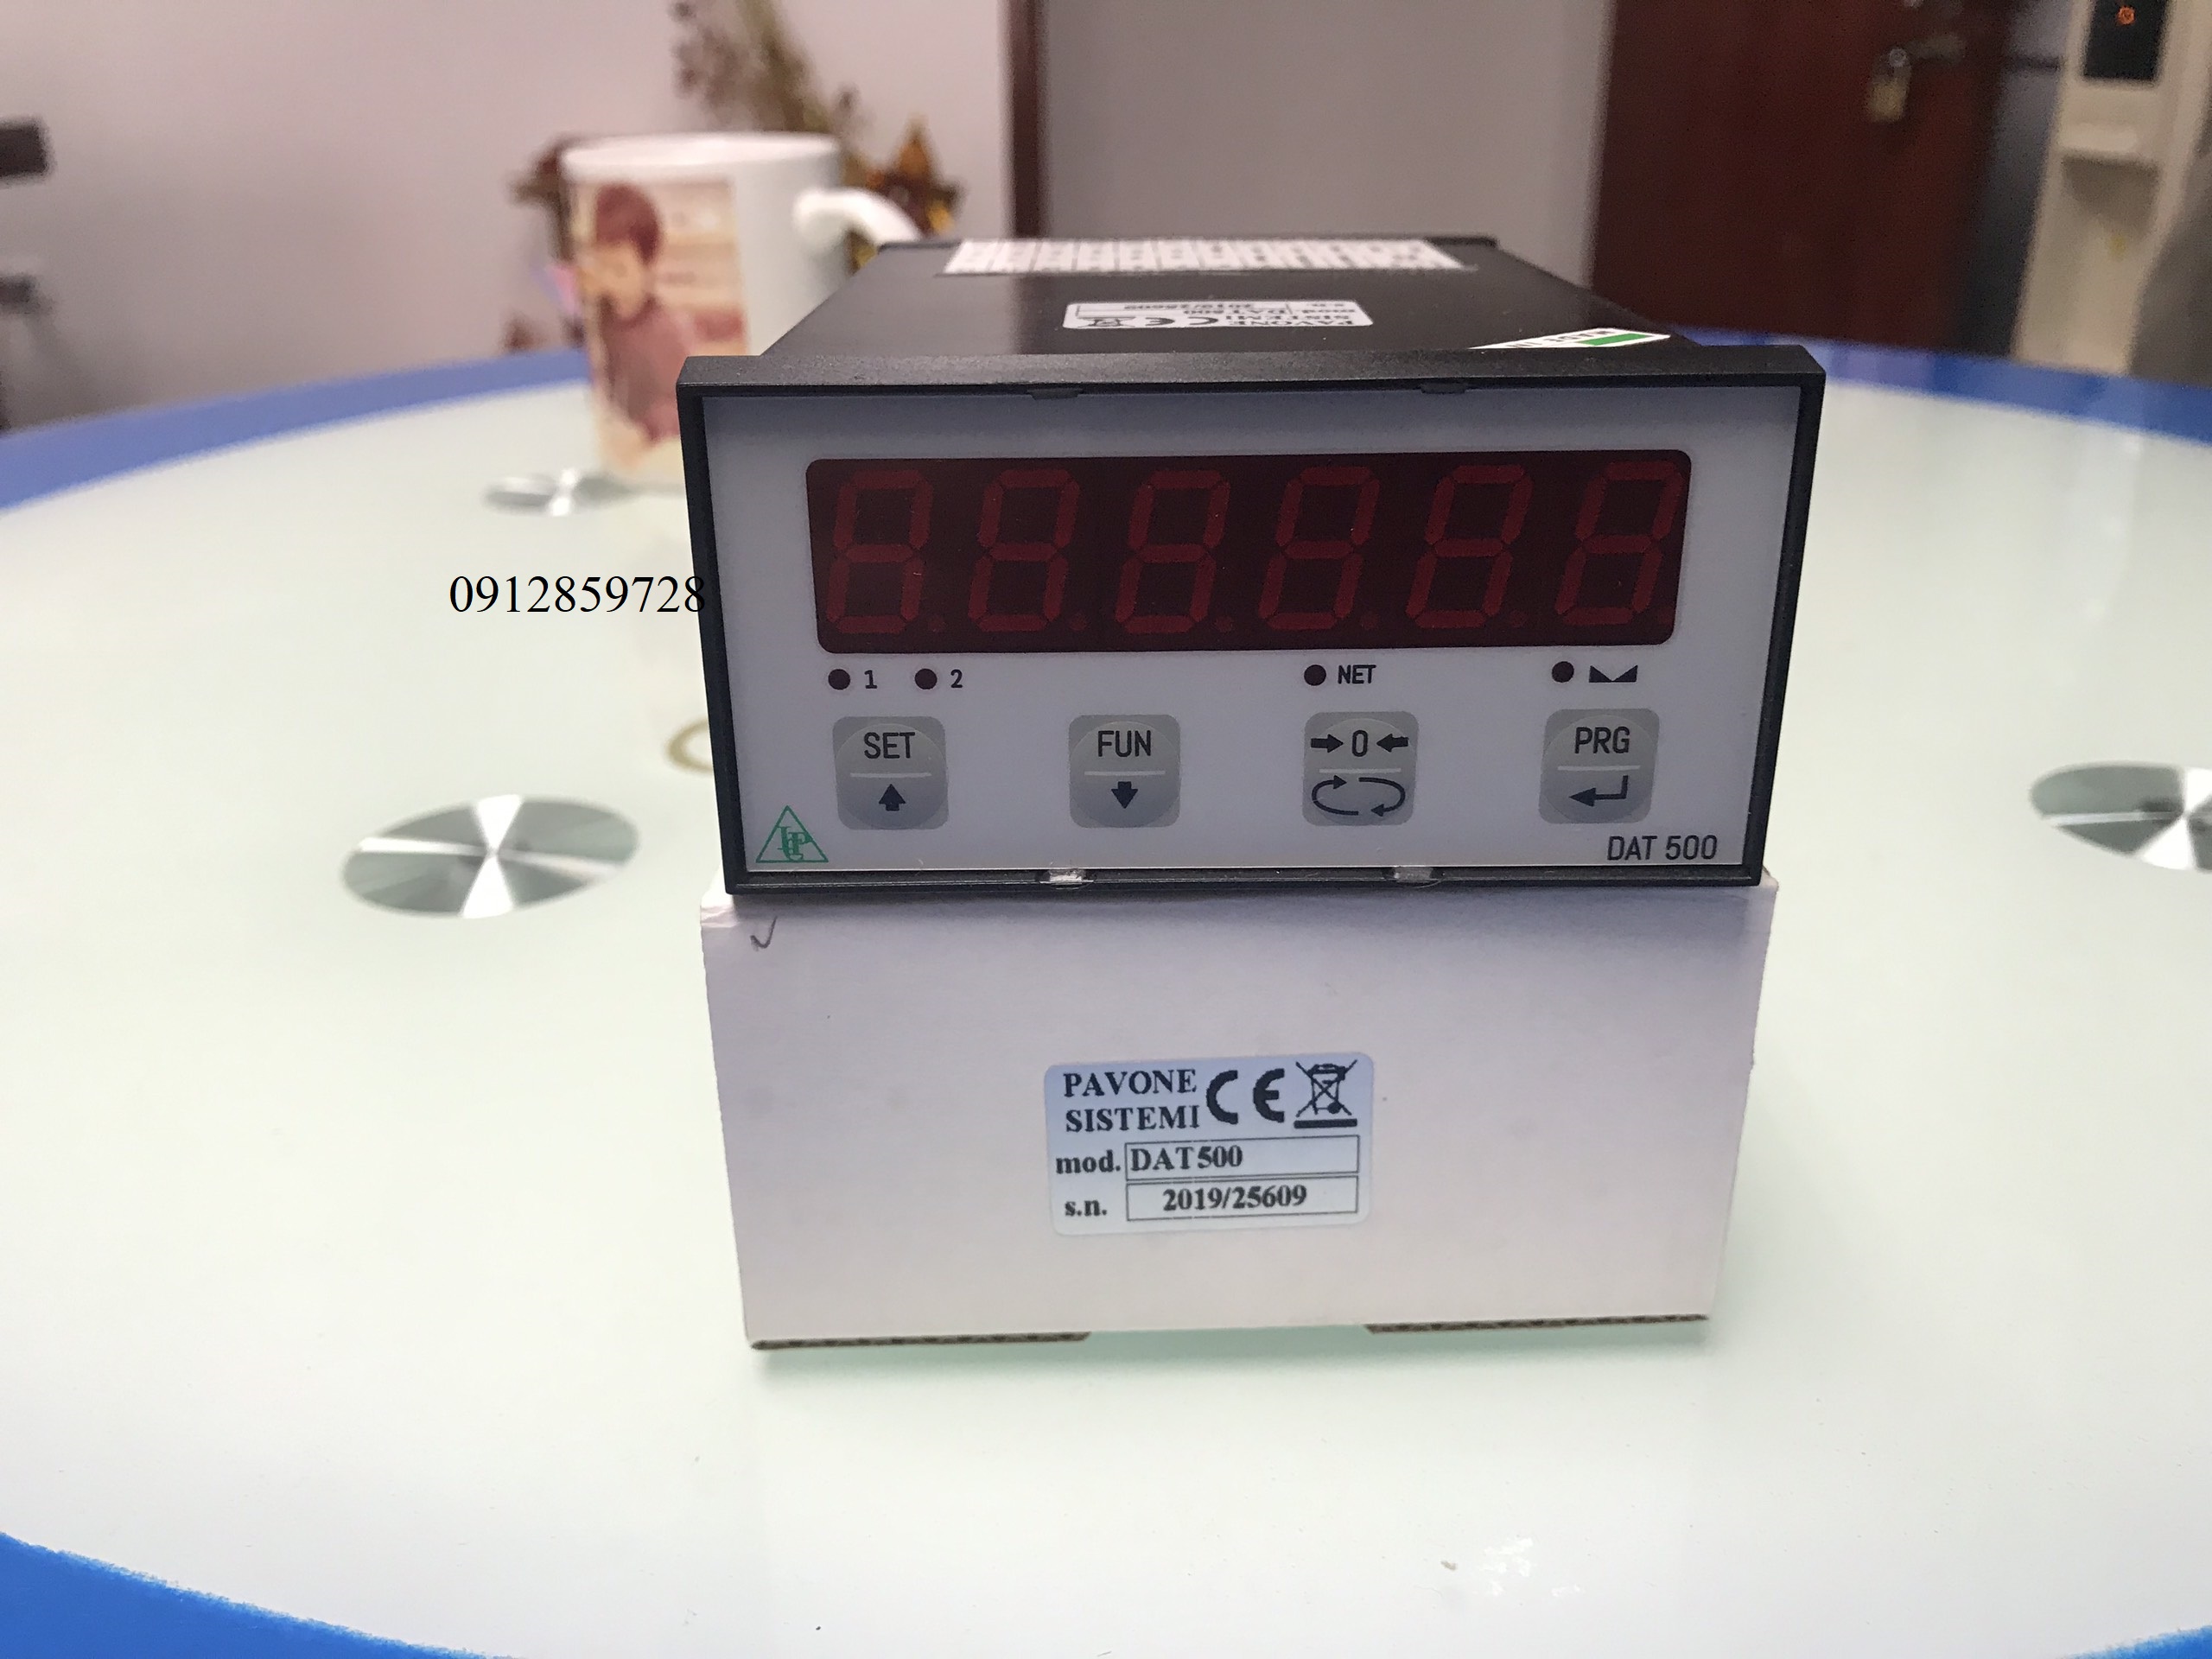  Đồng hồ cân DAT 500- phiên bản tiêu chuẩn sản xuất tại Pavone– Milan, Italy